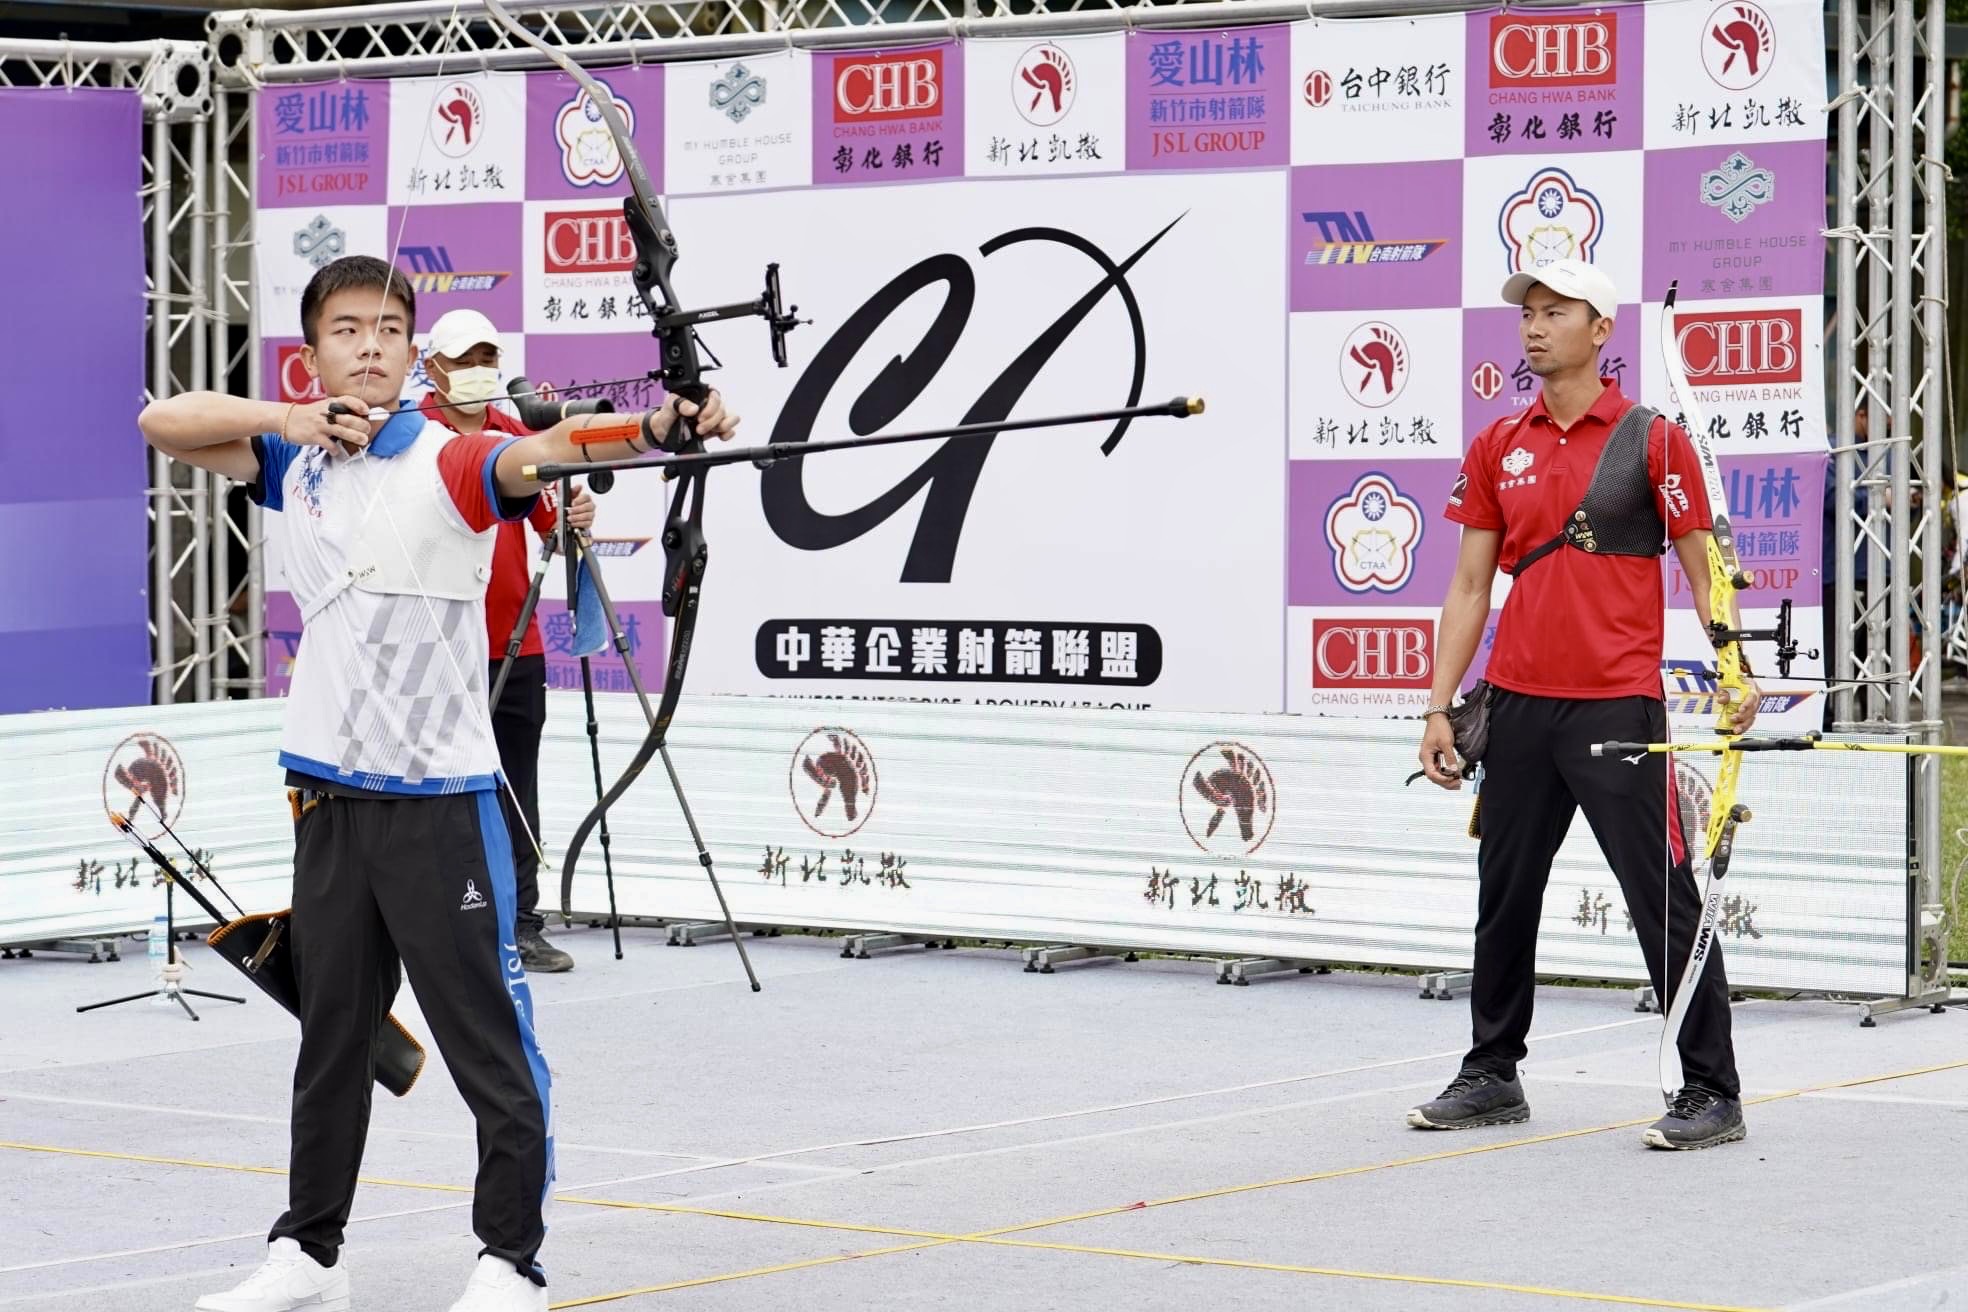 企業射箭聯賽開賽首戰由新竹市愛山林鄧宇成與寒舍集團魏均珩男單對決，最終由魏均珩拿下勝利。